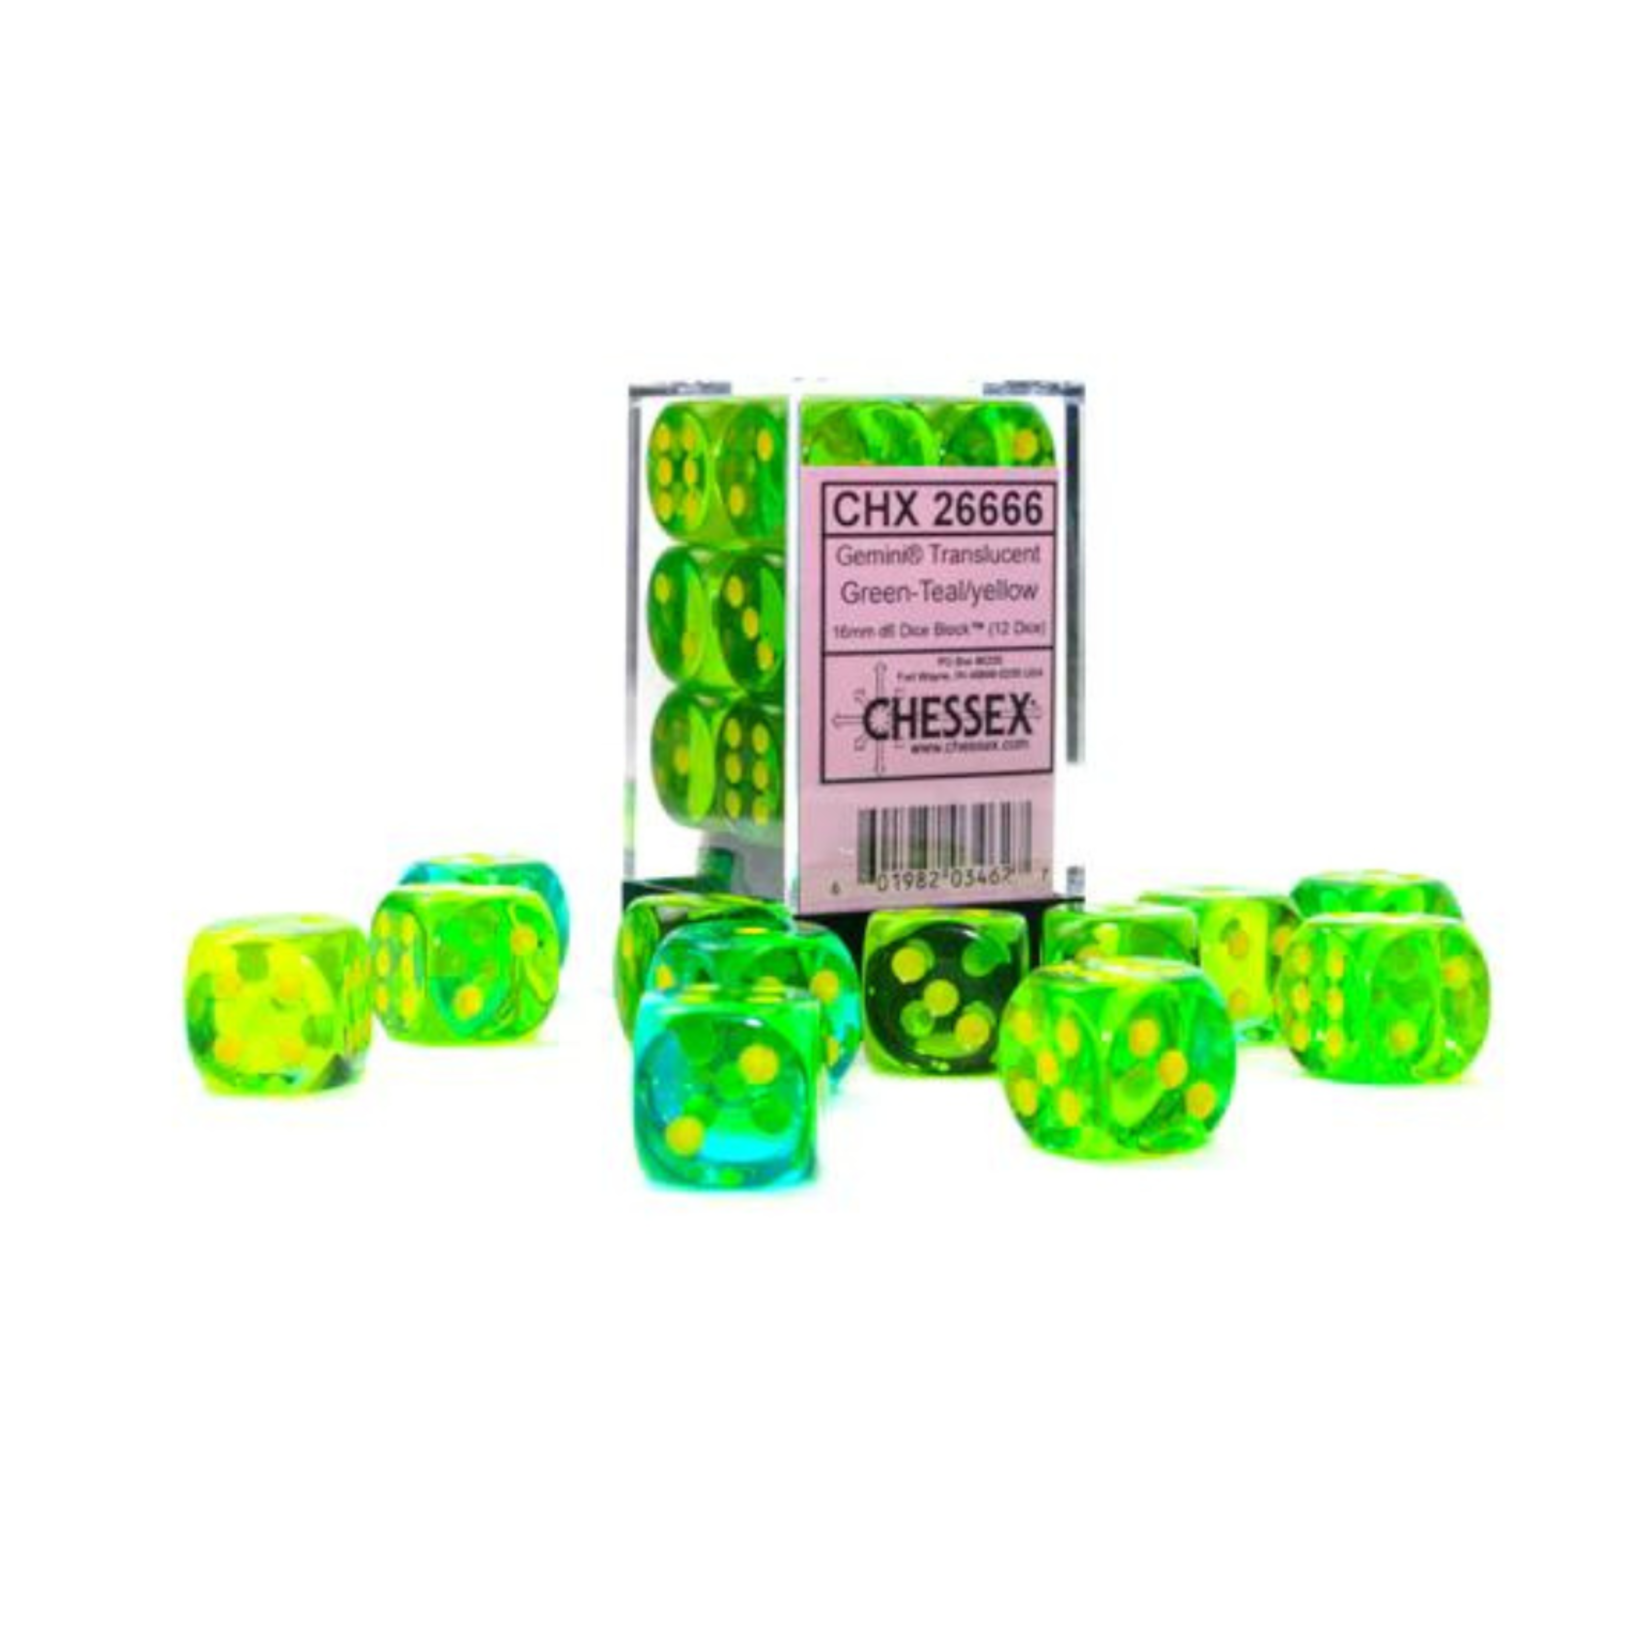 Chessex Kit de Dés Chessex Translucent Green-Teal/Yellow 12d6